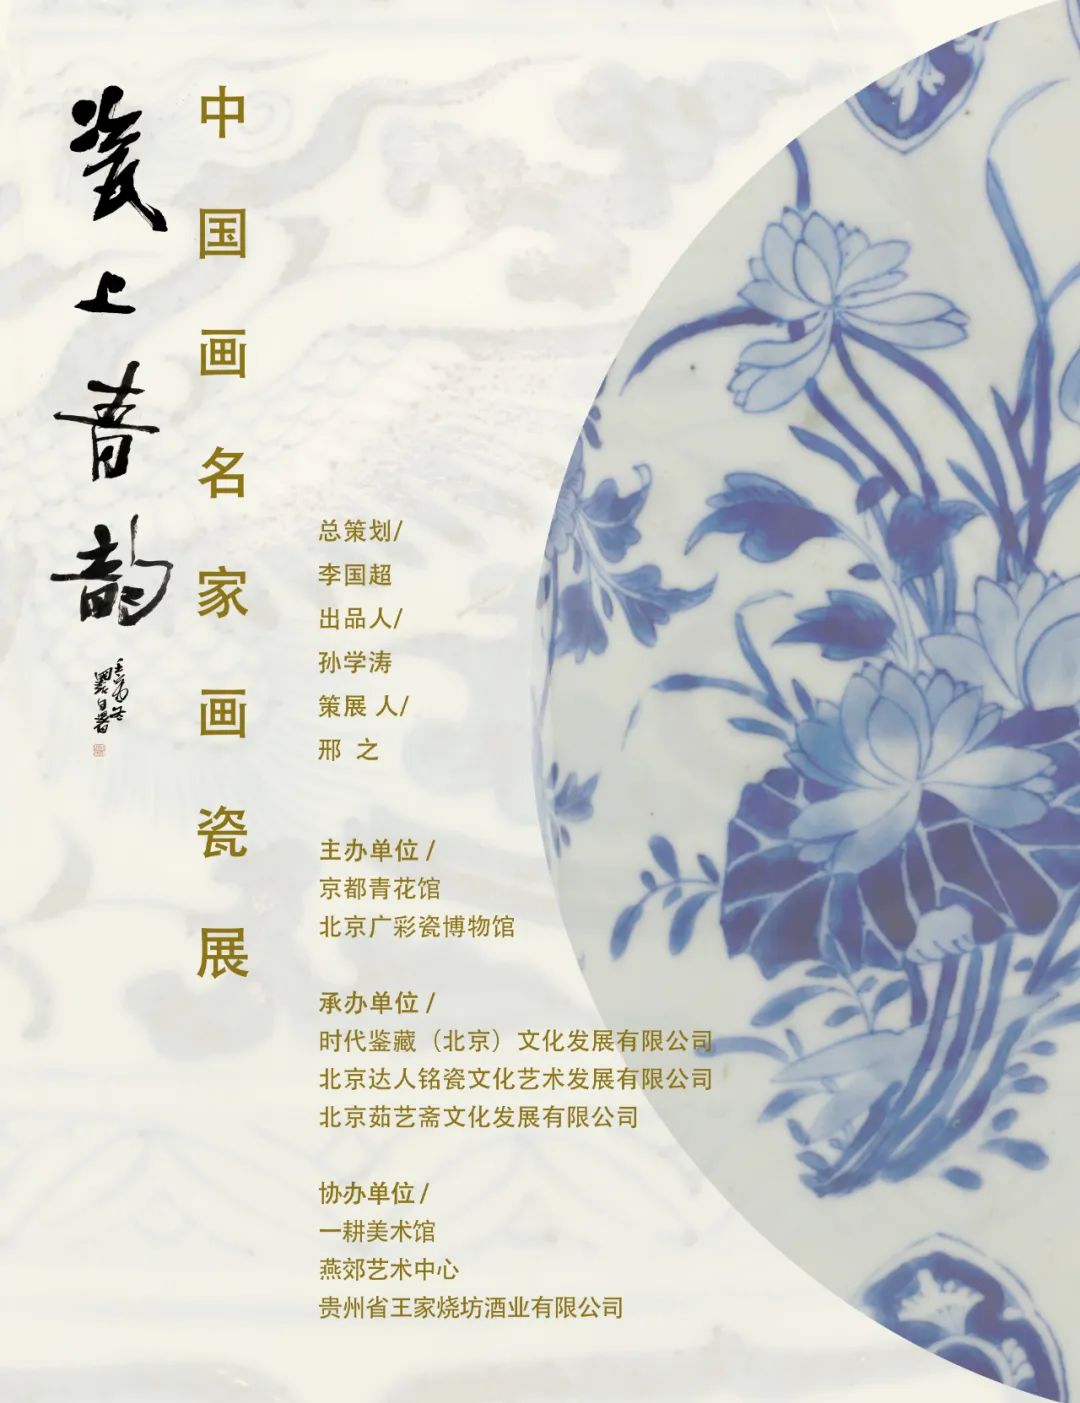 著名画家张军博应邀参展，“瓷上青韵——中国画名家画瓷展”12月30日将在北京开展